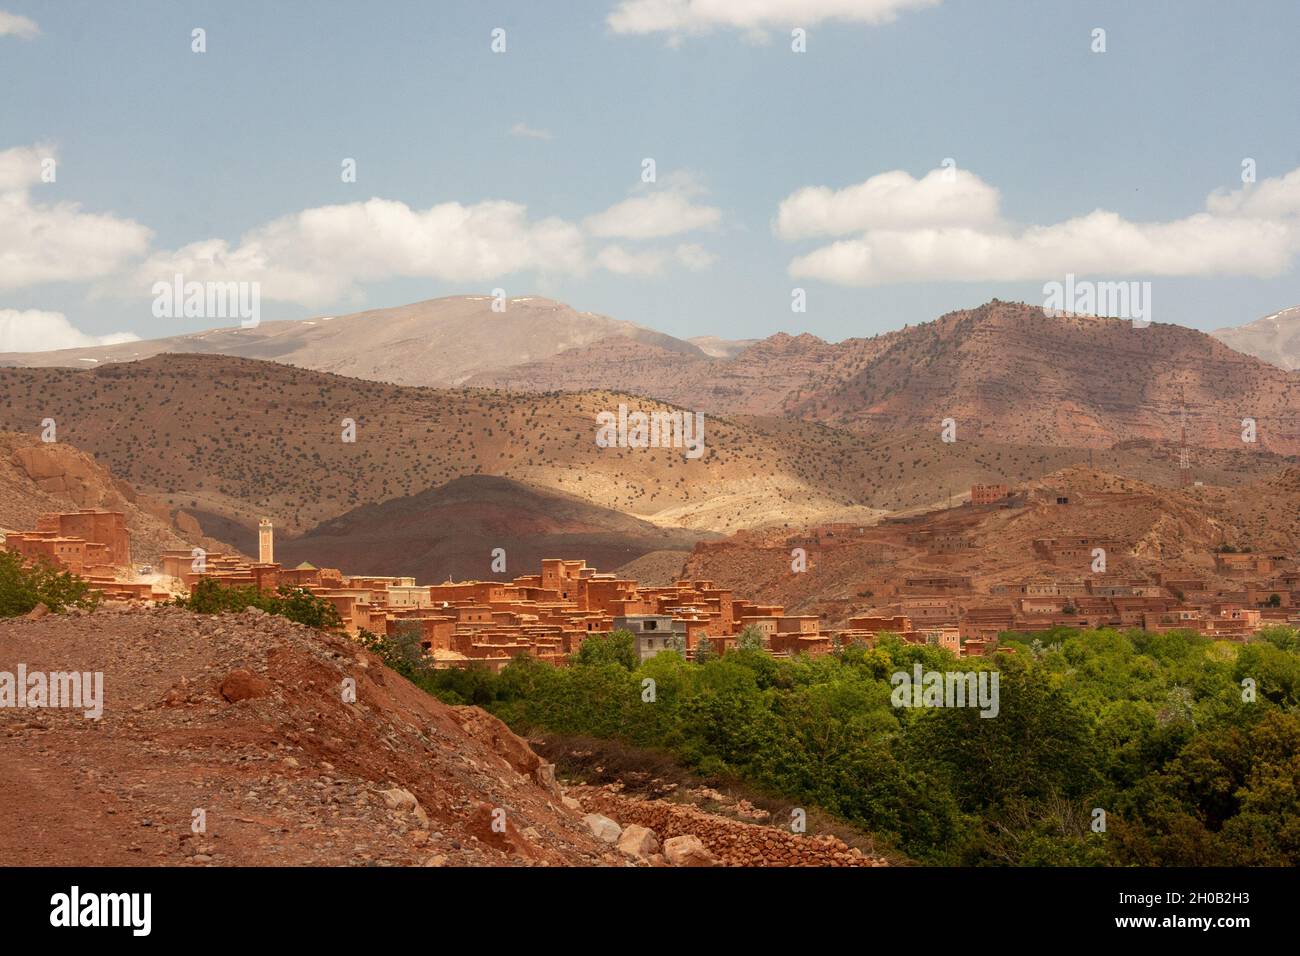 Paesaggio e paesaggio vicino alla città di Asni è una piccola città ai piedi delle montagne dell'Alto Atlante vicino a Marrakesh, Marocco. Foto Stock